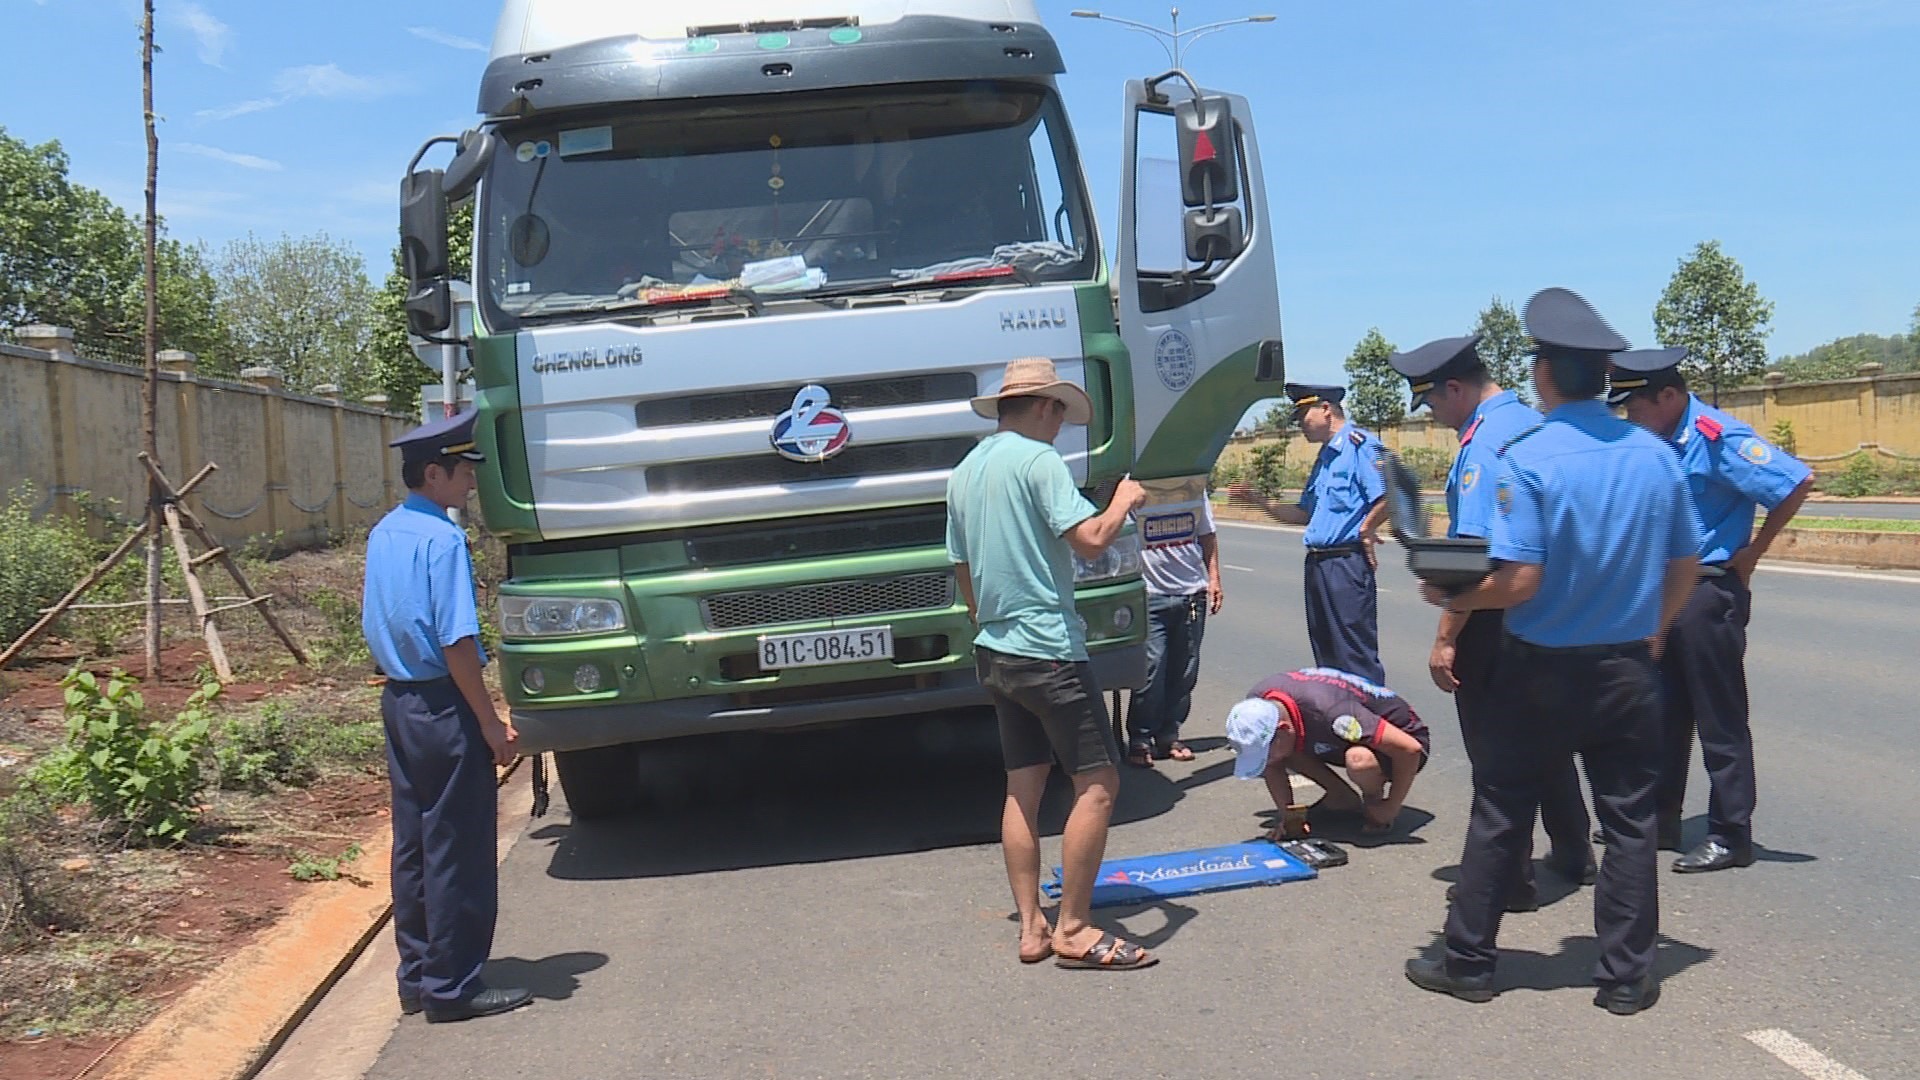 Thanh tra sở giao thông vận tải tỉnh Đắk Lắk đã ra quyết định xử phạt vi phạm hành chính một tài xế điều khiển xe ô tô chở quá tải trọng quy định với số tiền 26,5 triệu đồng. Ảnh: Lin Xong